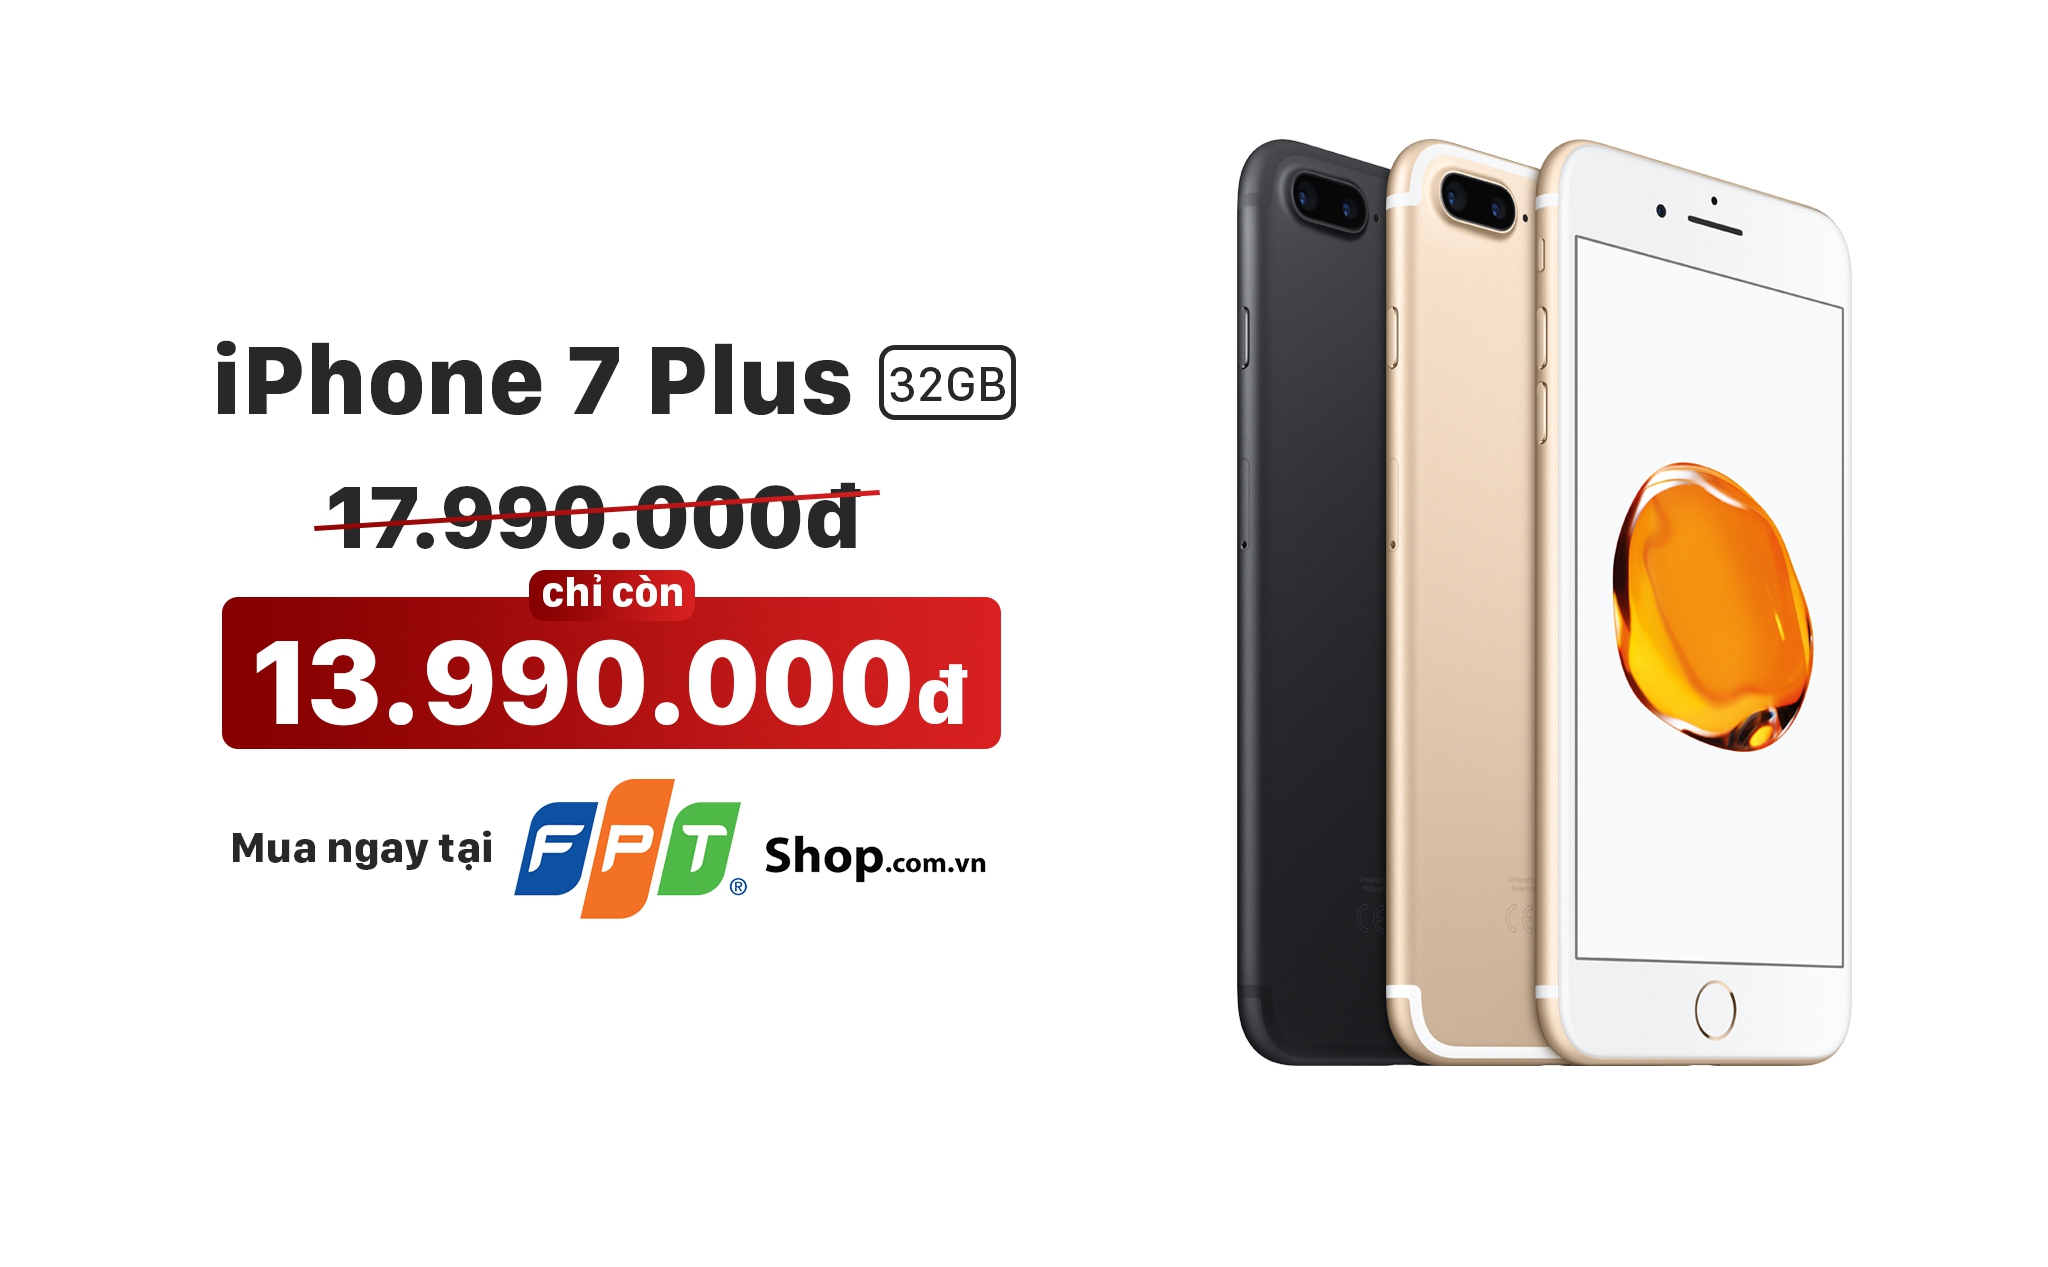 [QC] iPhone 7 Plus 32GB bất ngờ “sập giá” 4 triệu đồng tại FPT Shop